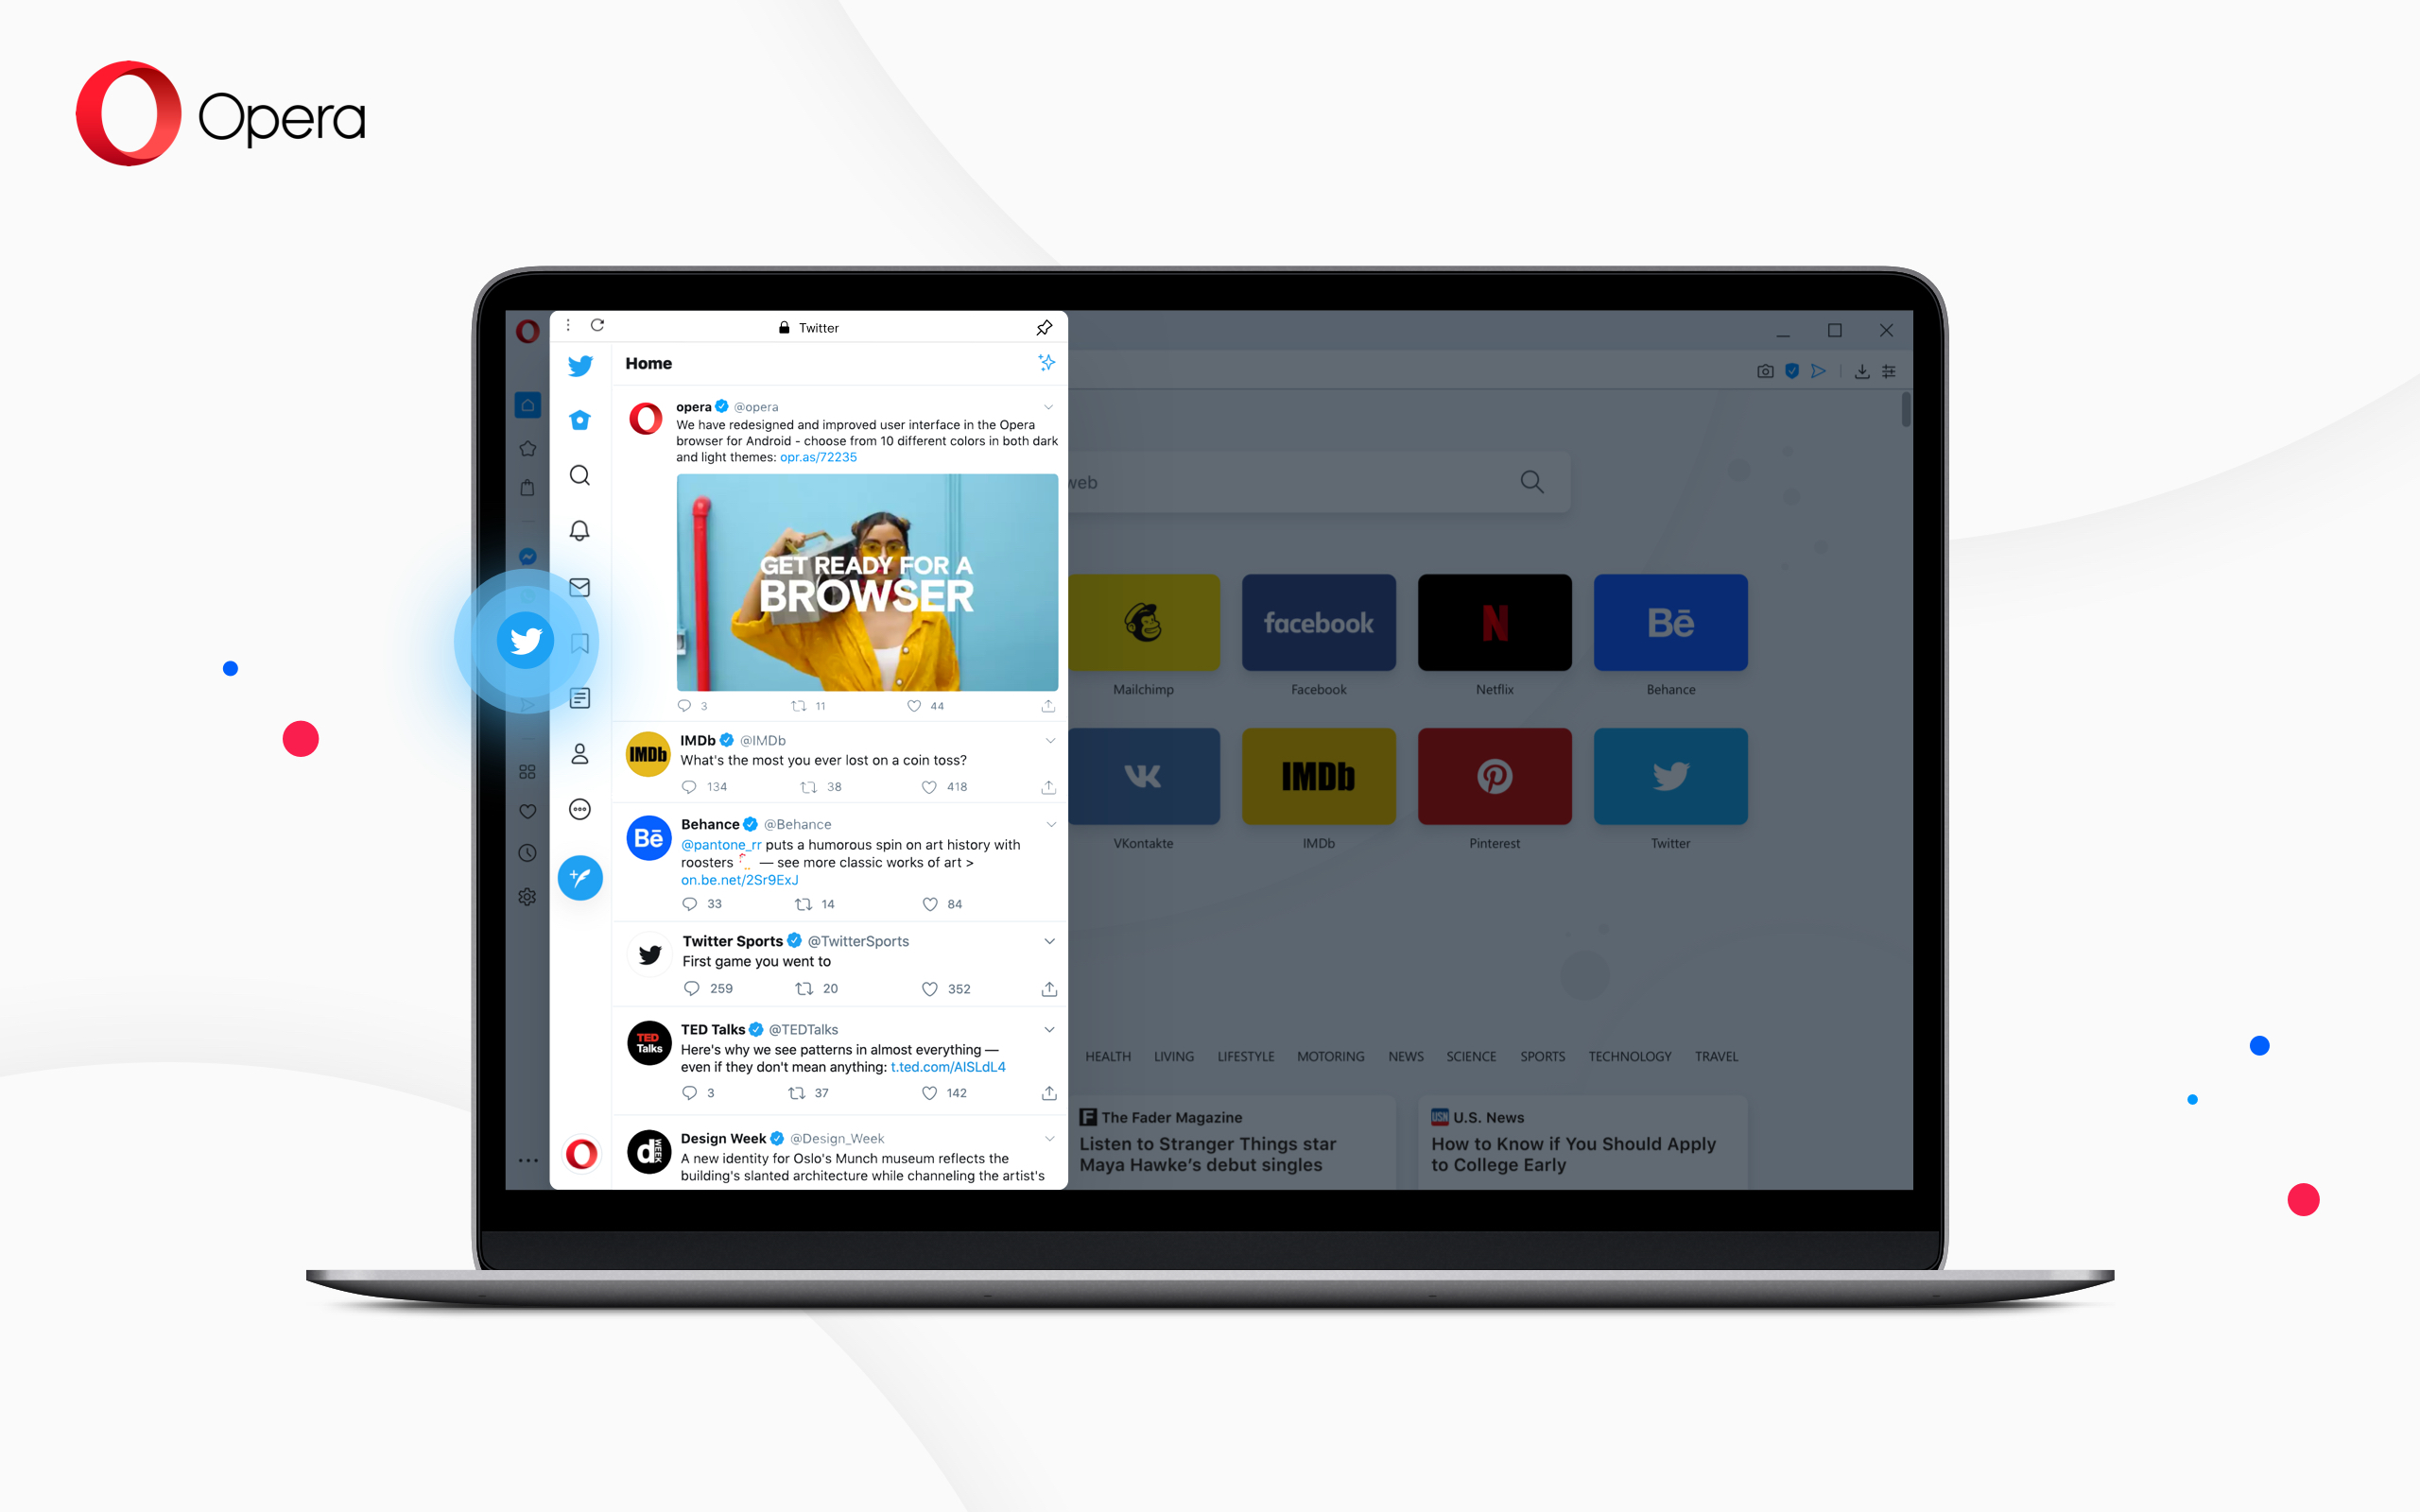 Opera desktop now with built-in Twitter